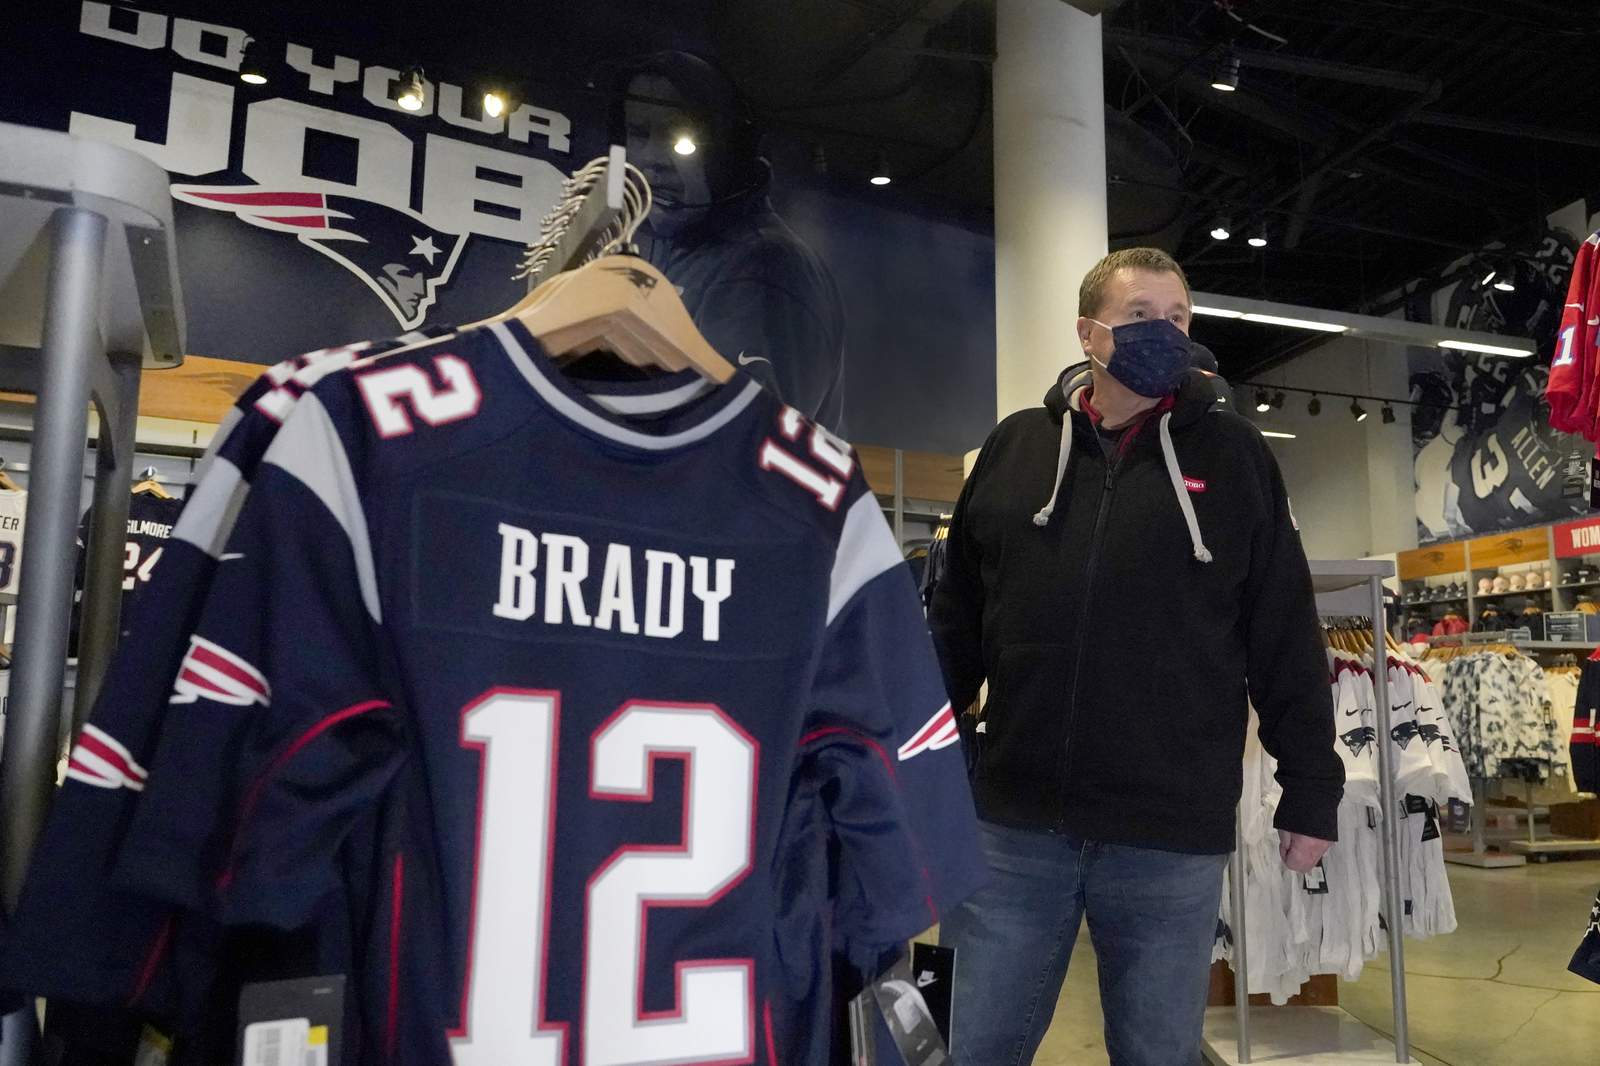 'No Hard Feelings': Patriots fans still rooting for Brady